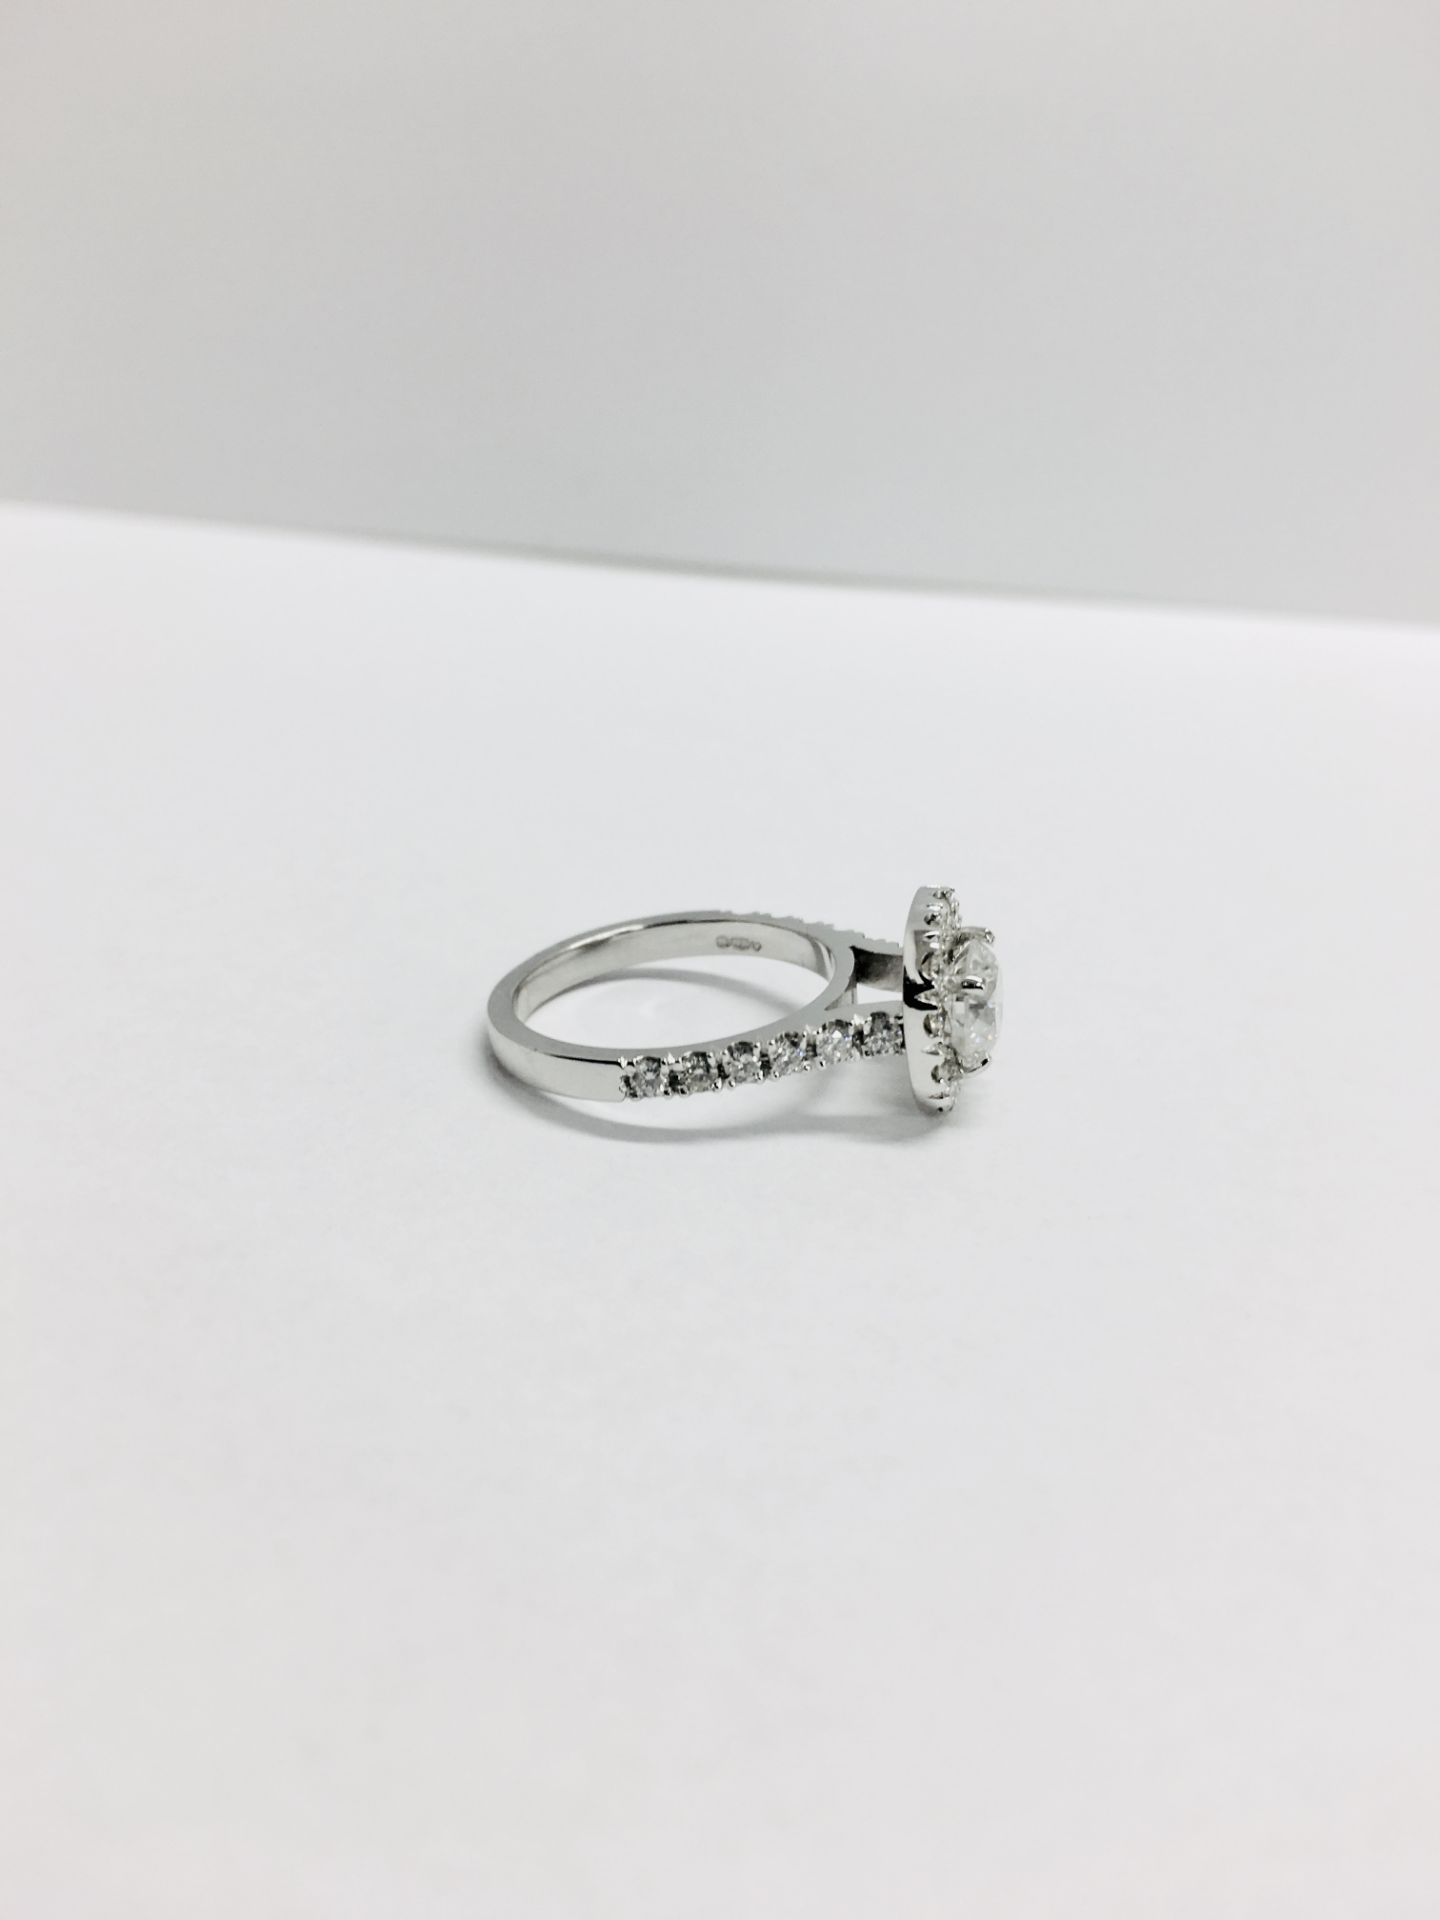 18ct white gold Halo style Diamond ring,0.50ct brilliant cut centre,h colour vs clarity,0.25ct - Image 6 of 6